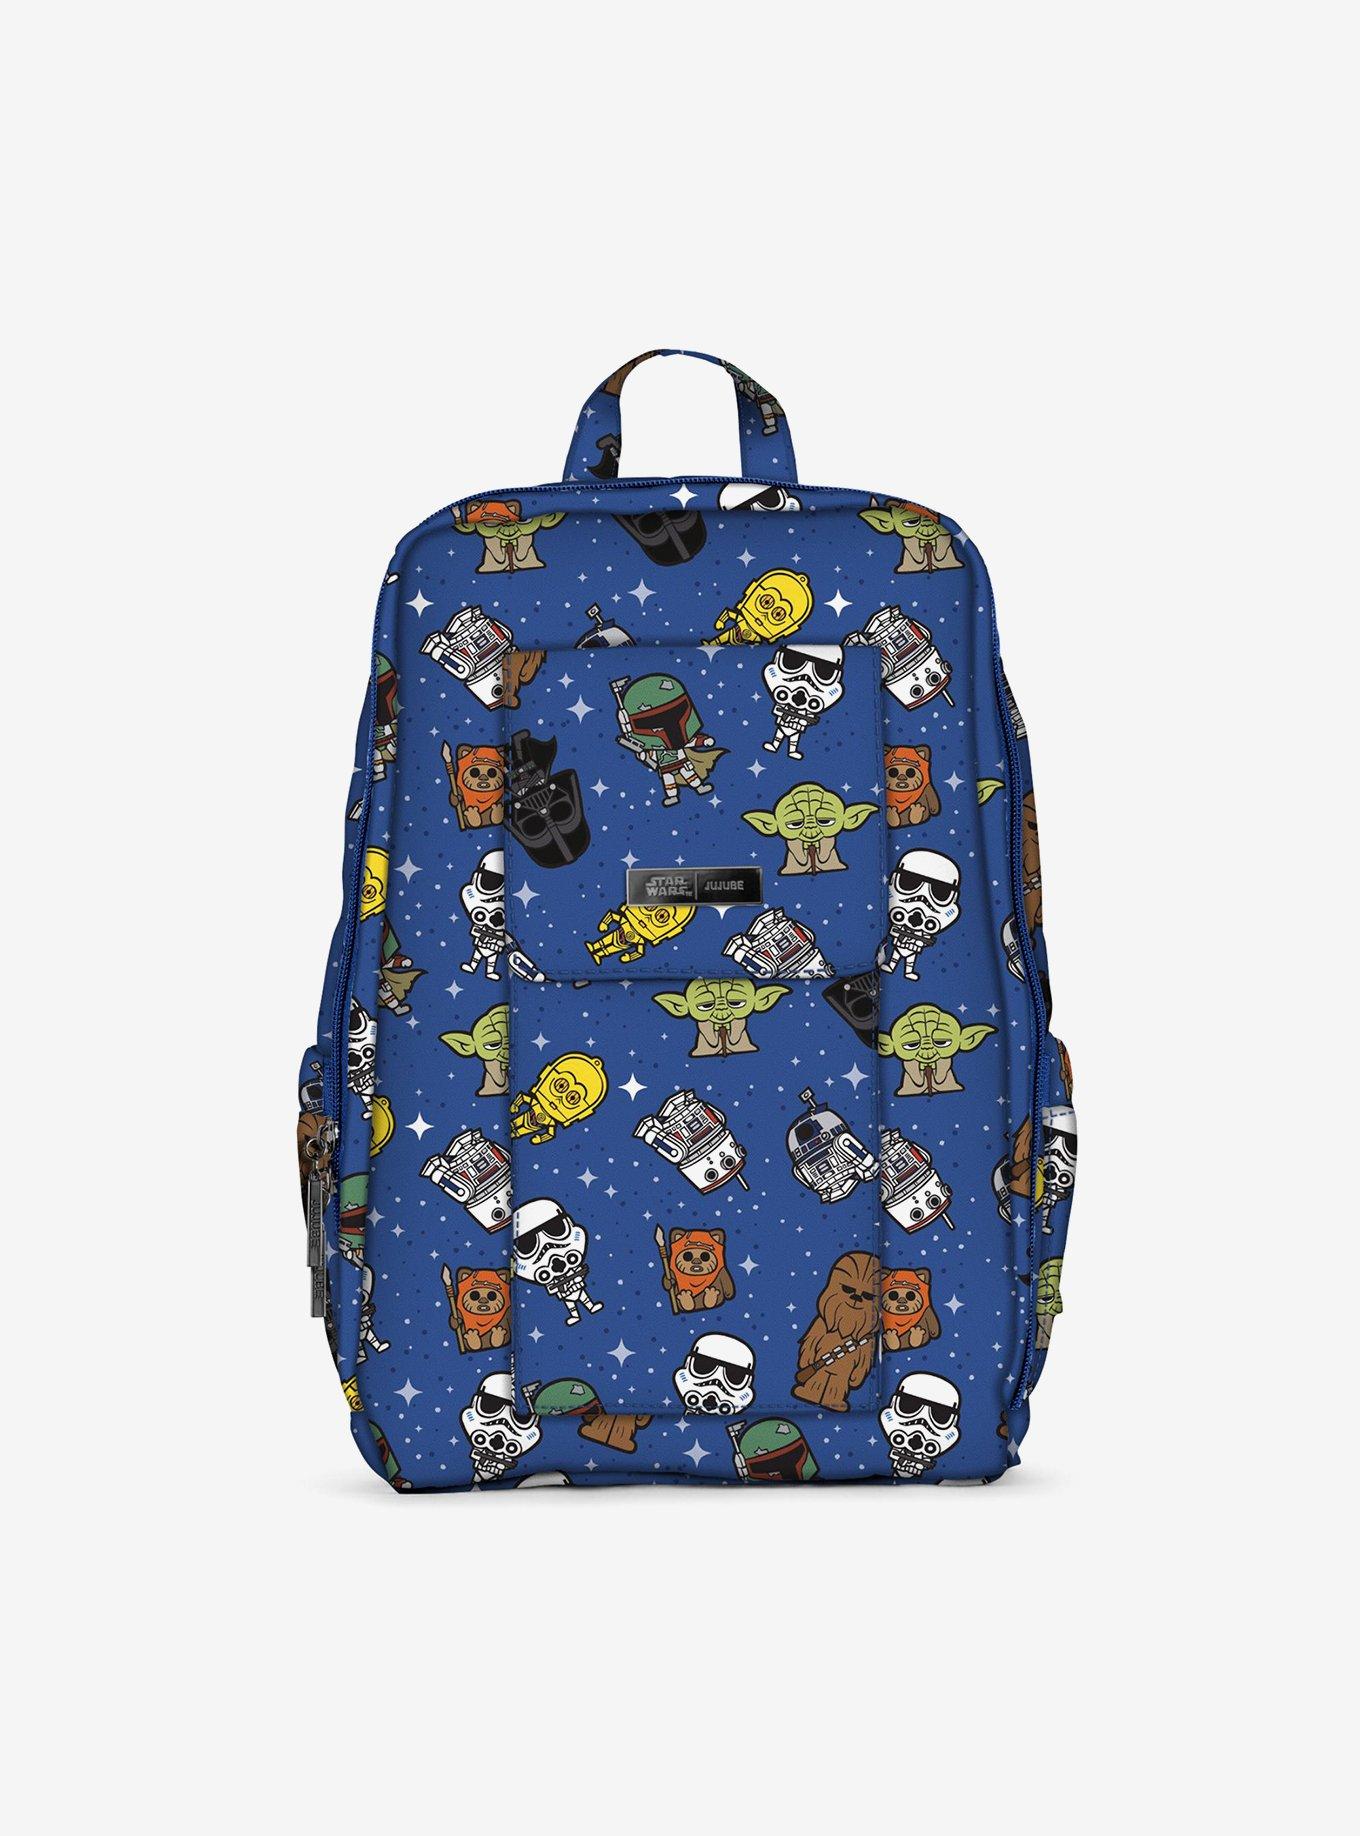 JuJuBe x Star Wars Galaxy of Rivals Minibe Plus Backpack